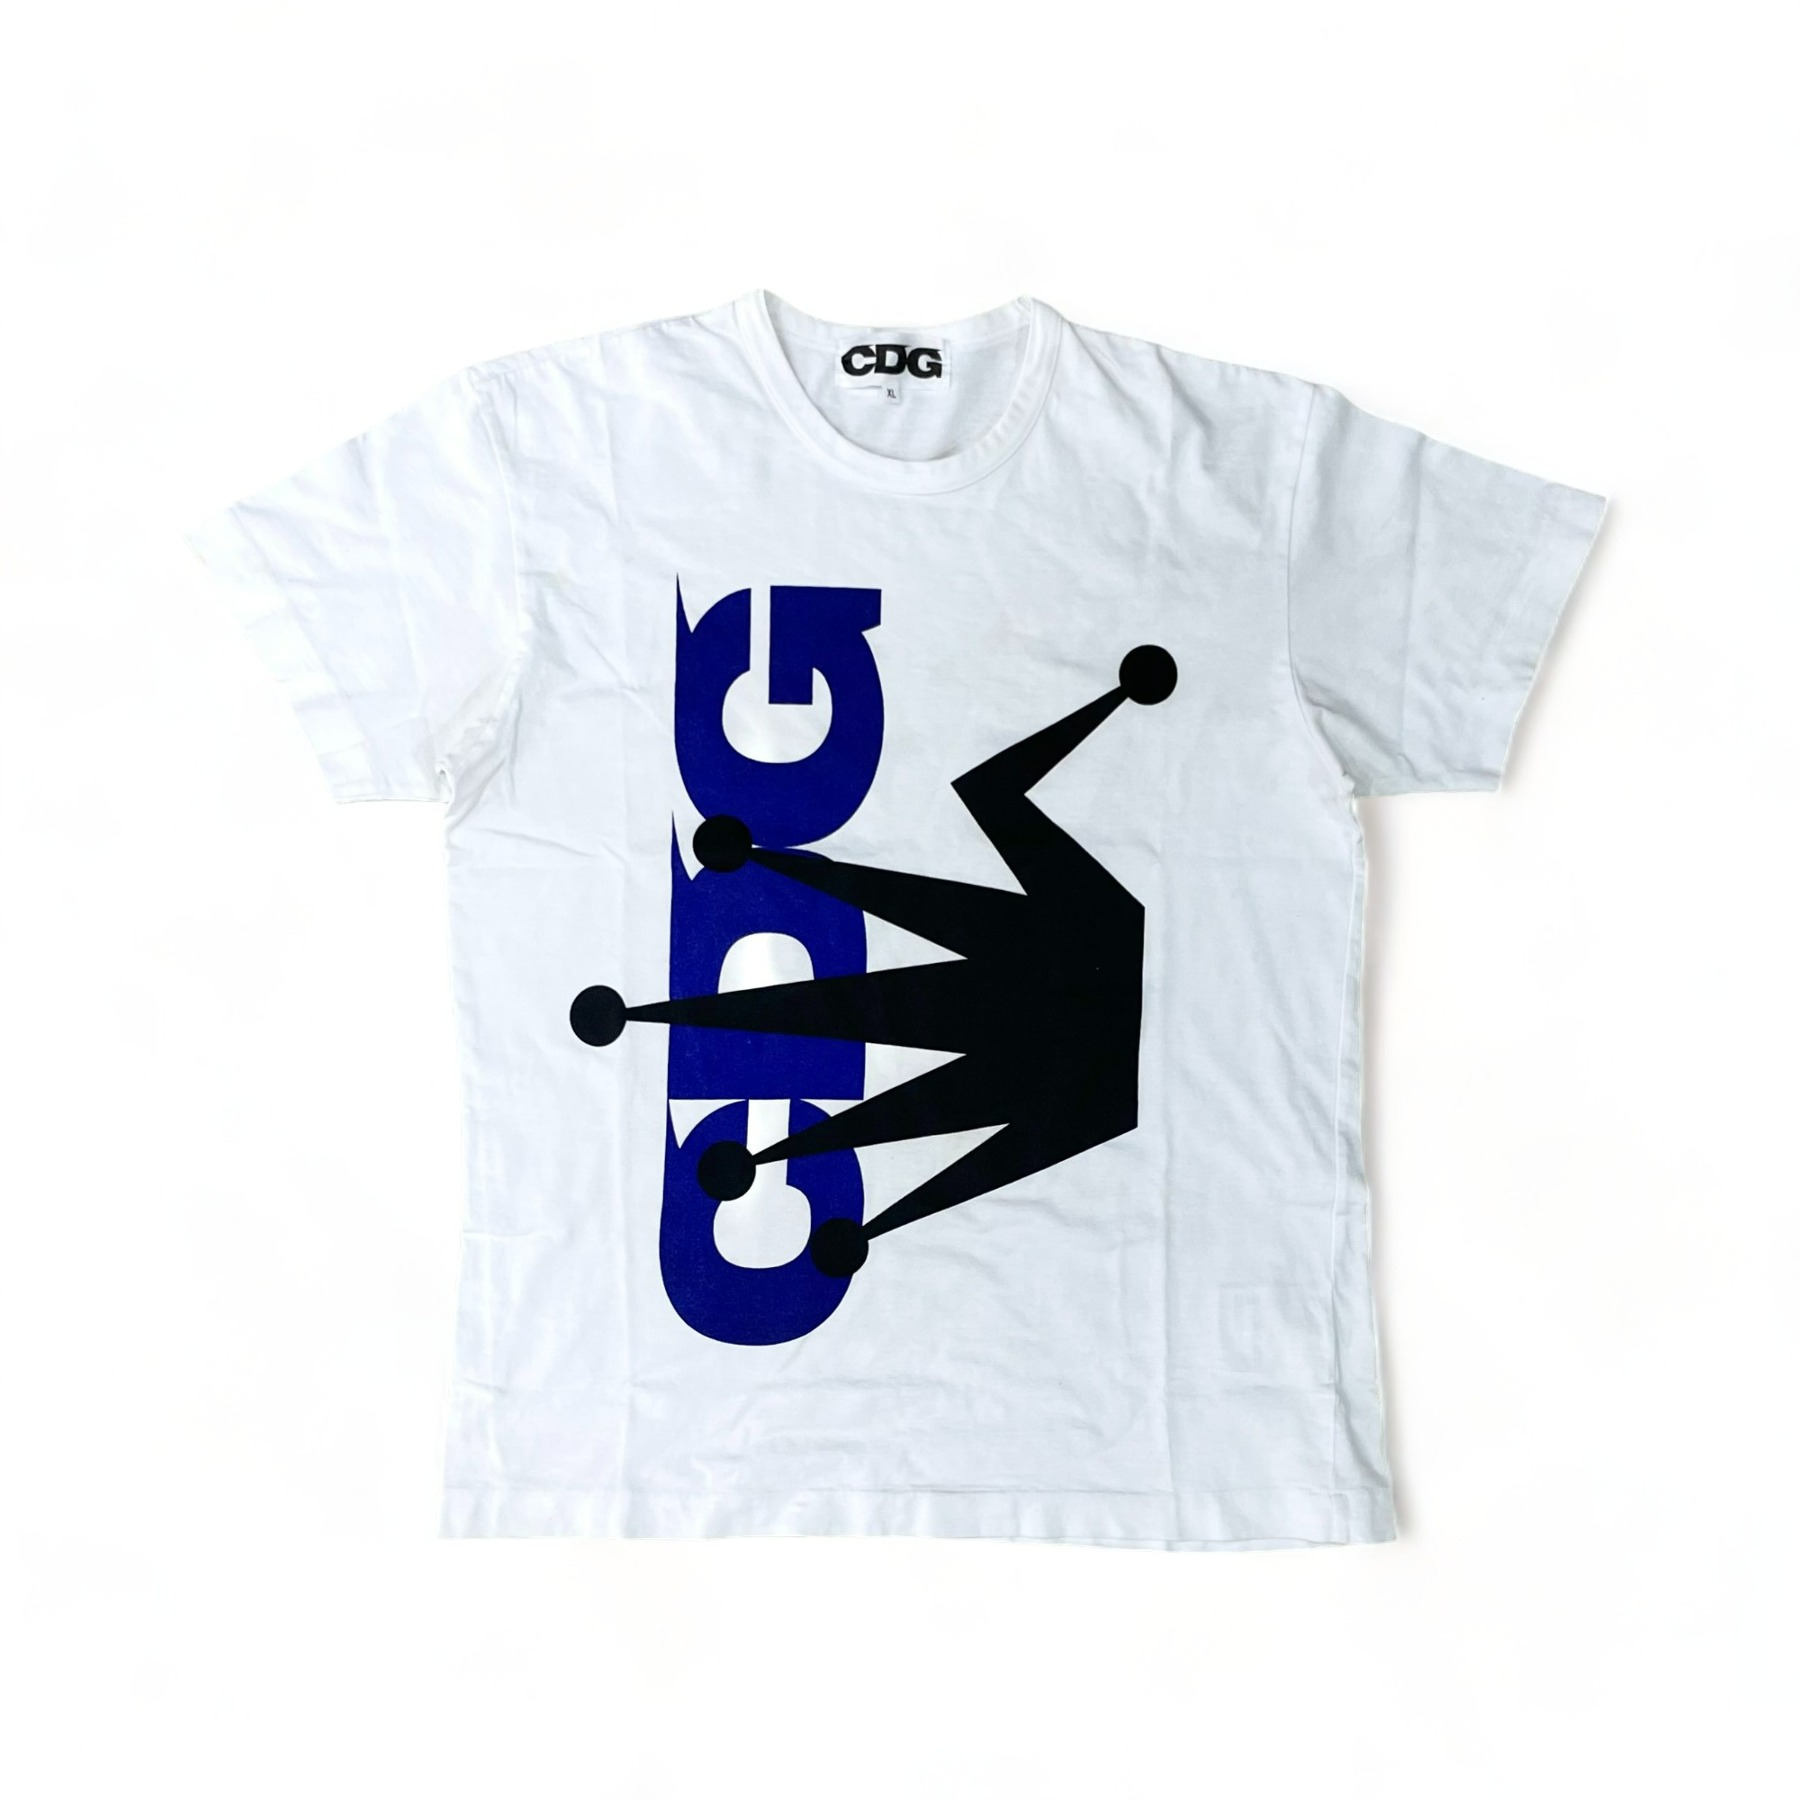 CDG x Stussy T-Shirt - XL